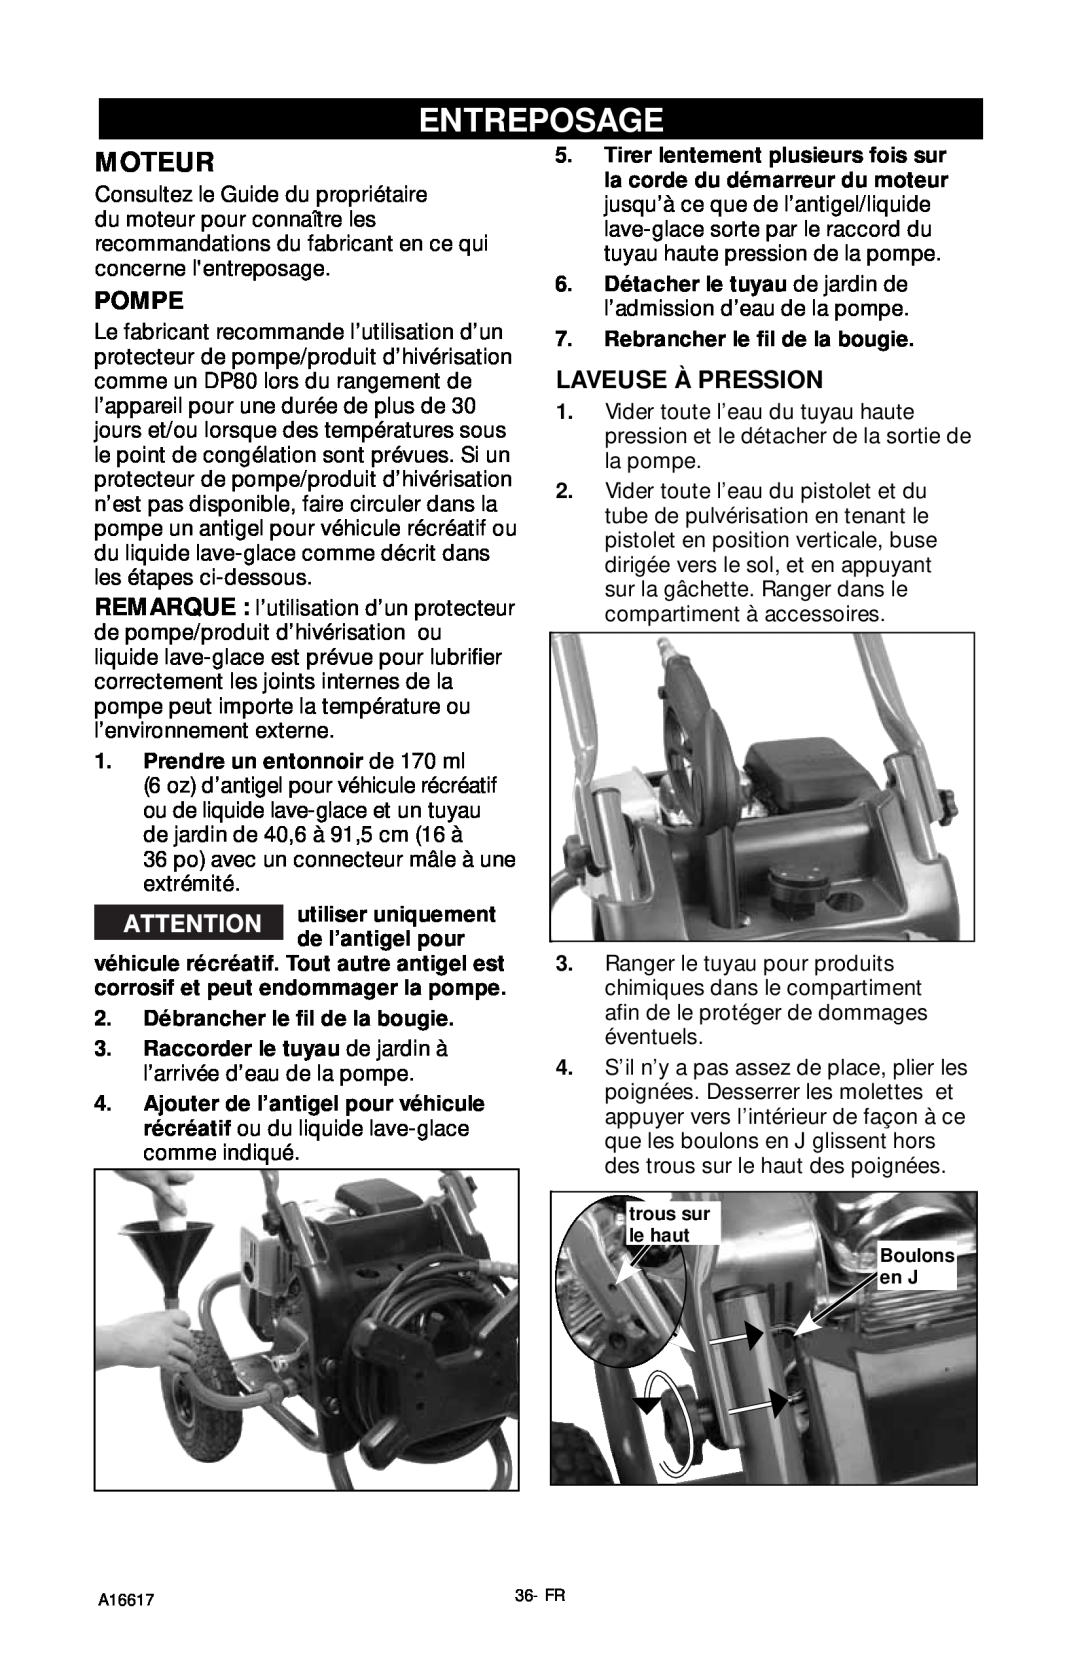 DeVillbiss Air Power Company XR2625, A16617 operation manual Entreposage, Moteur, Pompe, Laveuse À Pression 